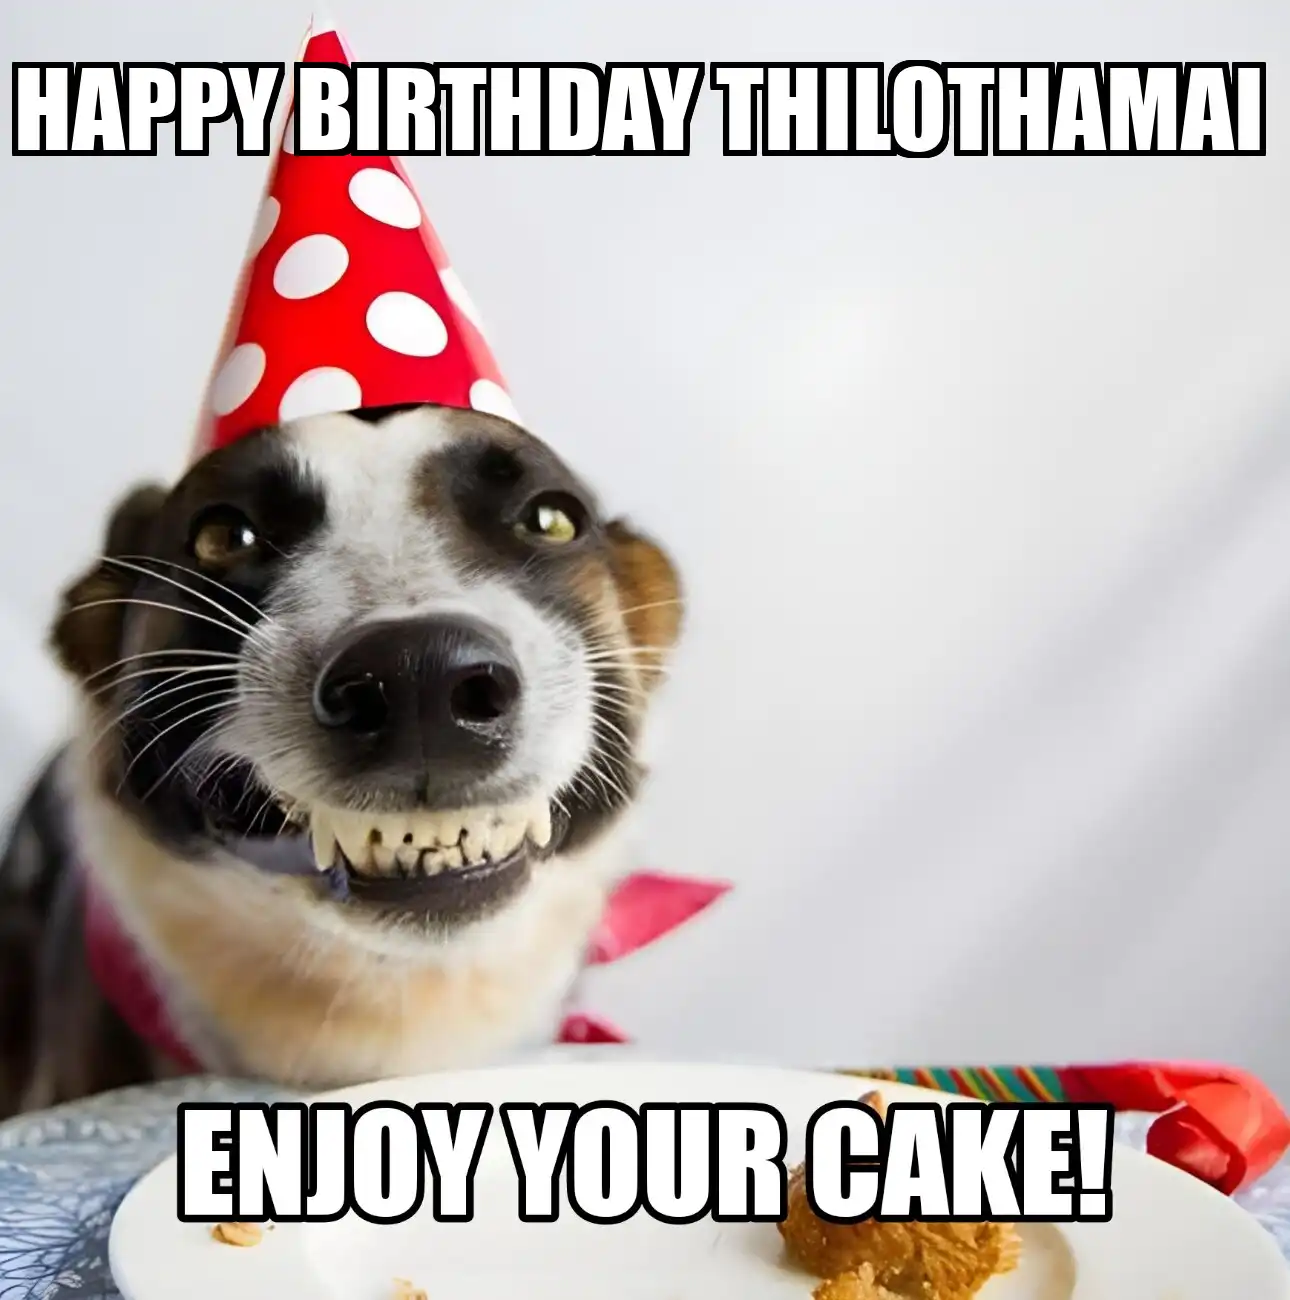 Happy Birthday Thilothamai Enjoy Your Cake Dog Meme